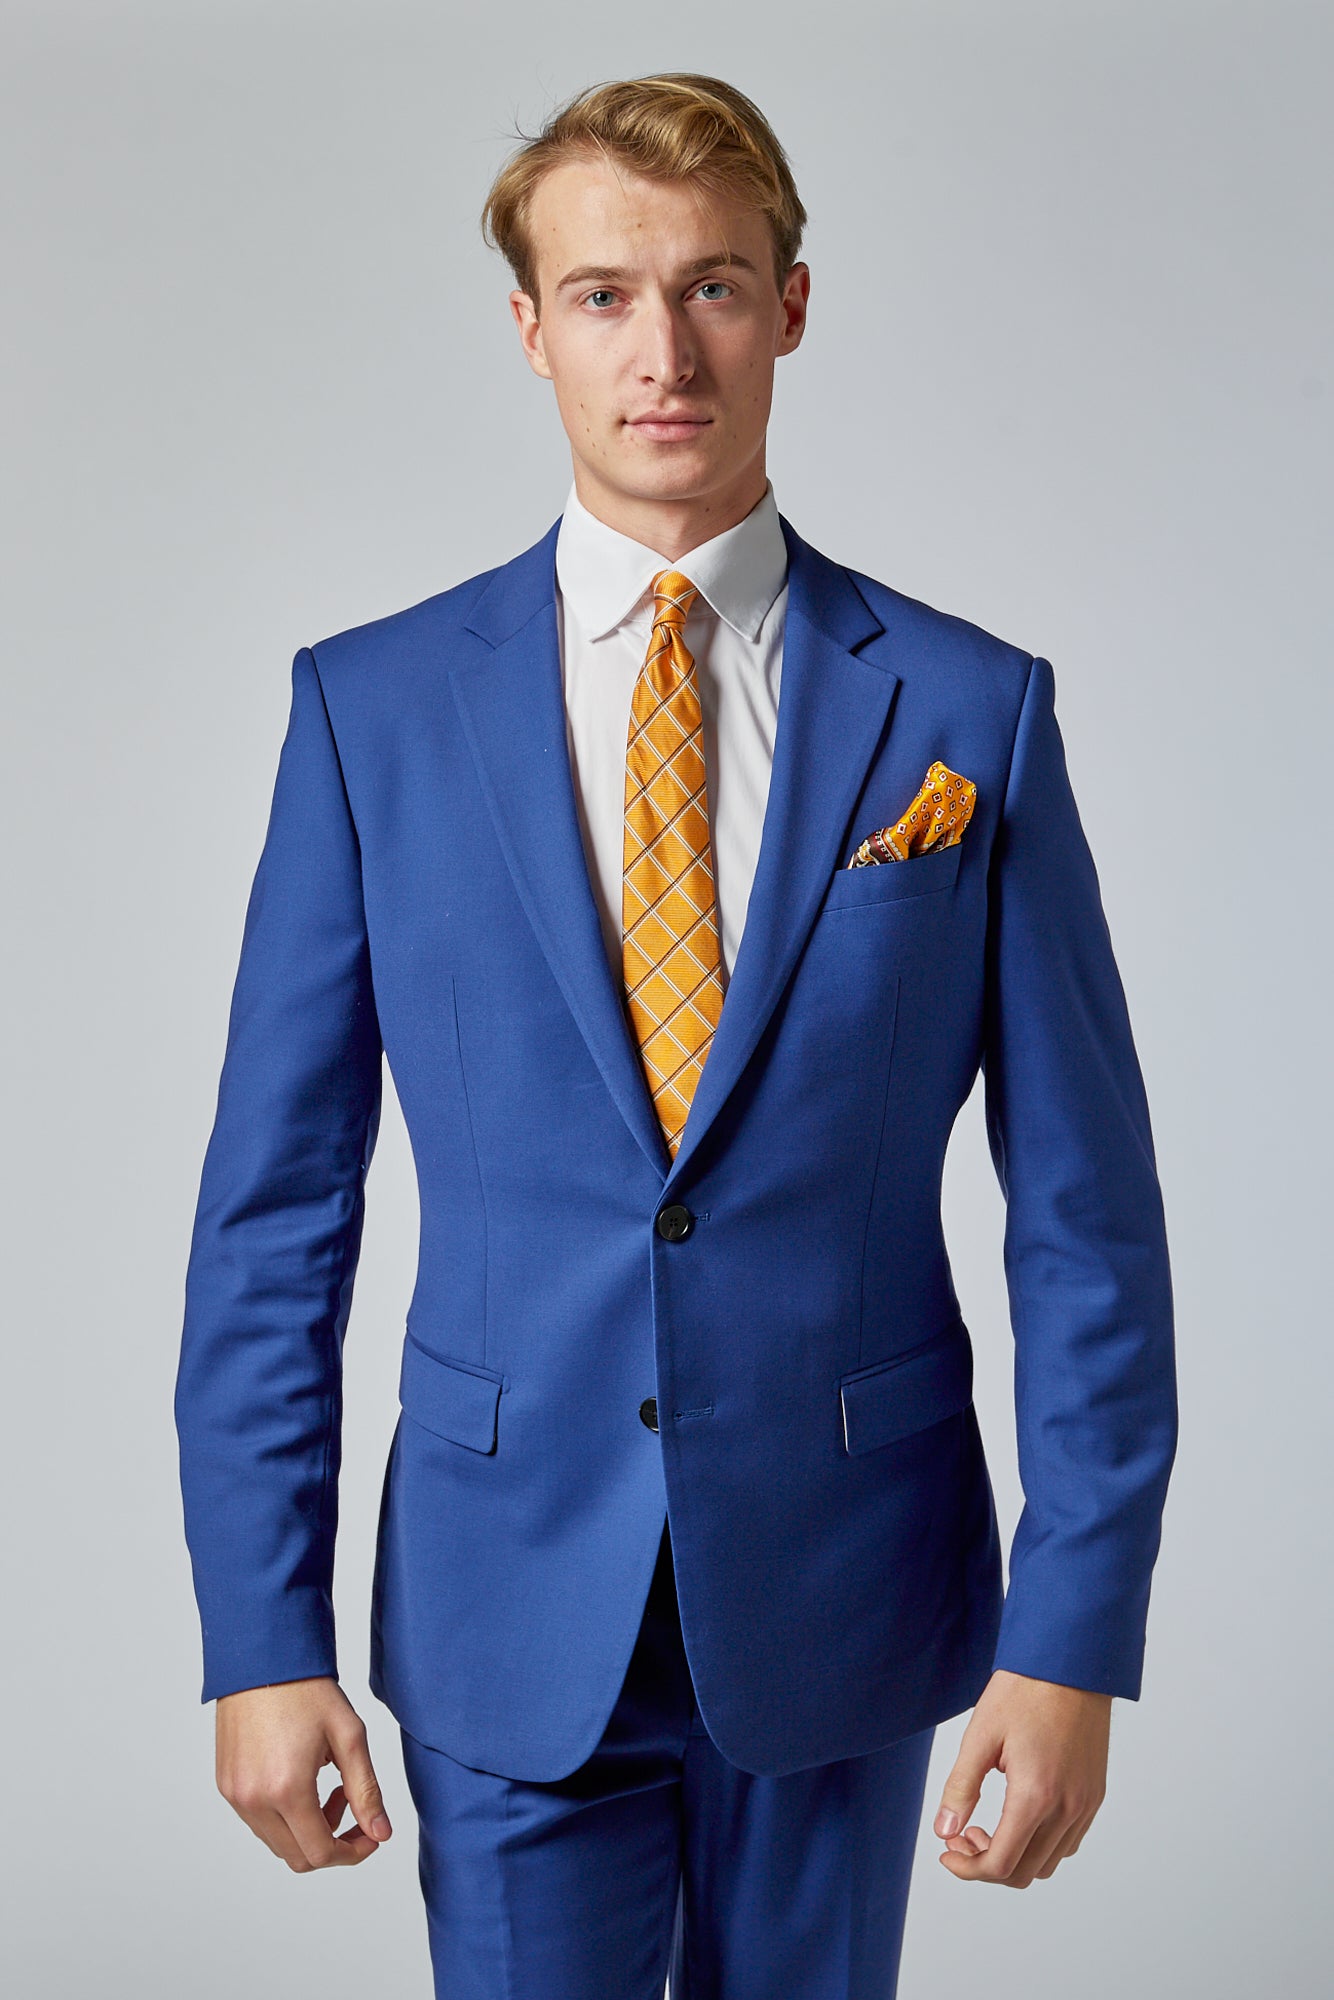 jakkesæt i marineblå farve og guld slips